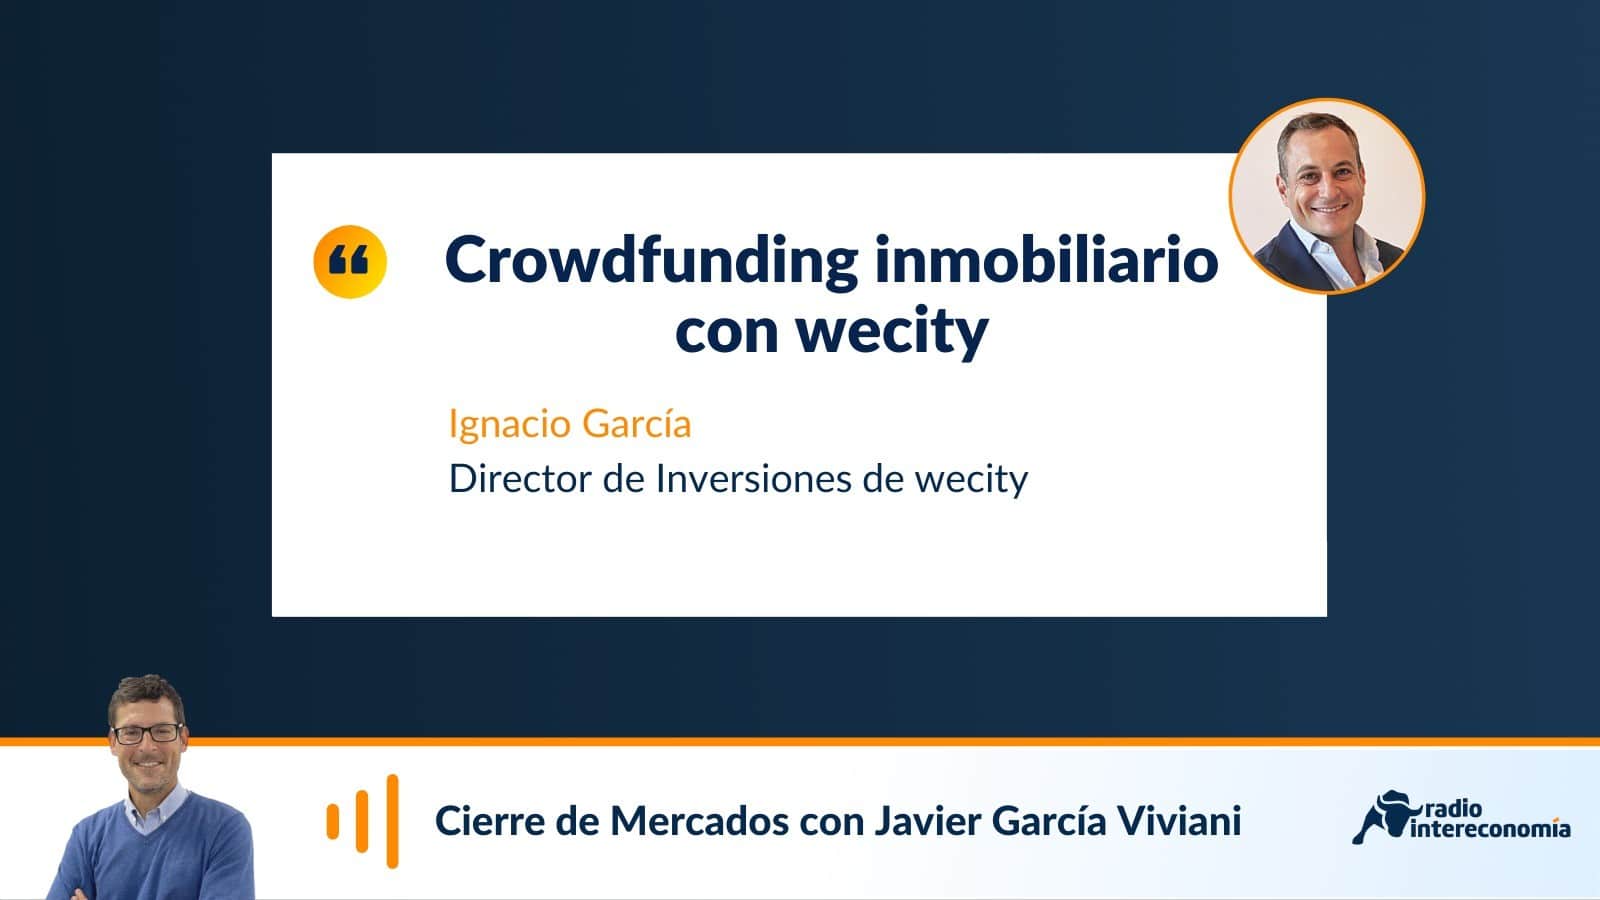 wecity lanza un crowdfunding inmobiliario en Tarragona